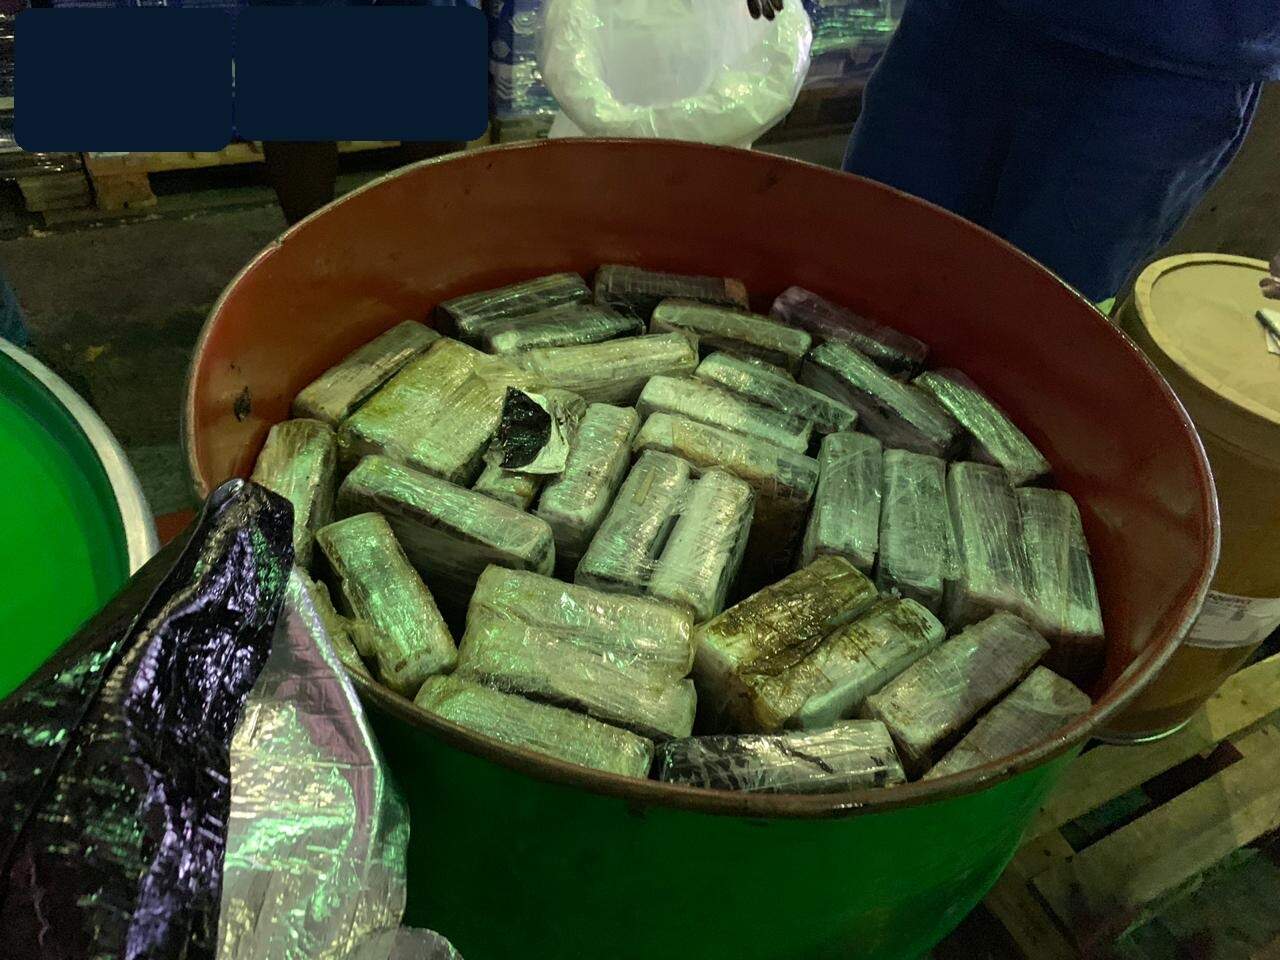 Tabletes de cocaína estavam em tambores localizados dentro de contêiner